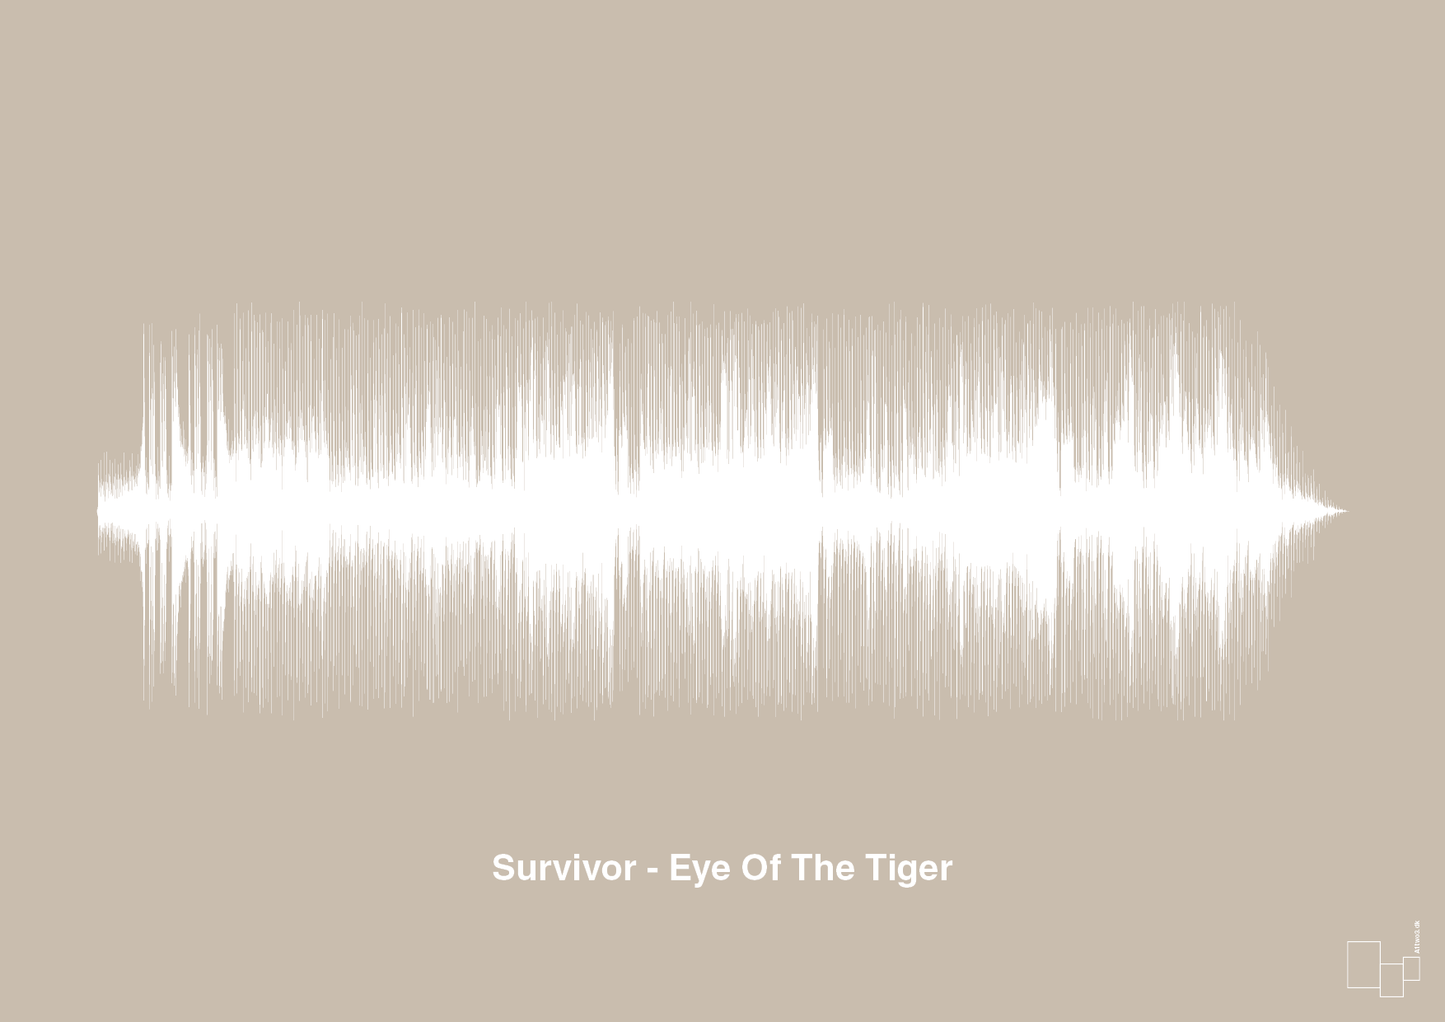 survivor - eye of the tiger - Plakat med Musik i Creamy Mushroom